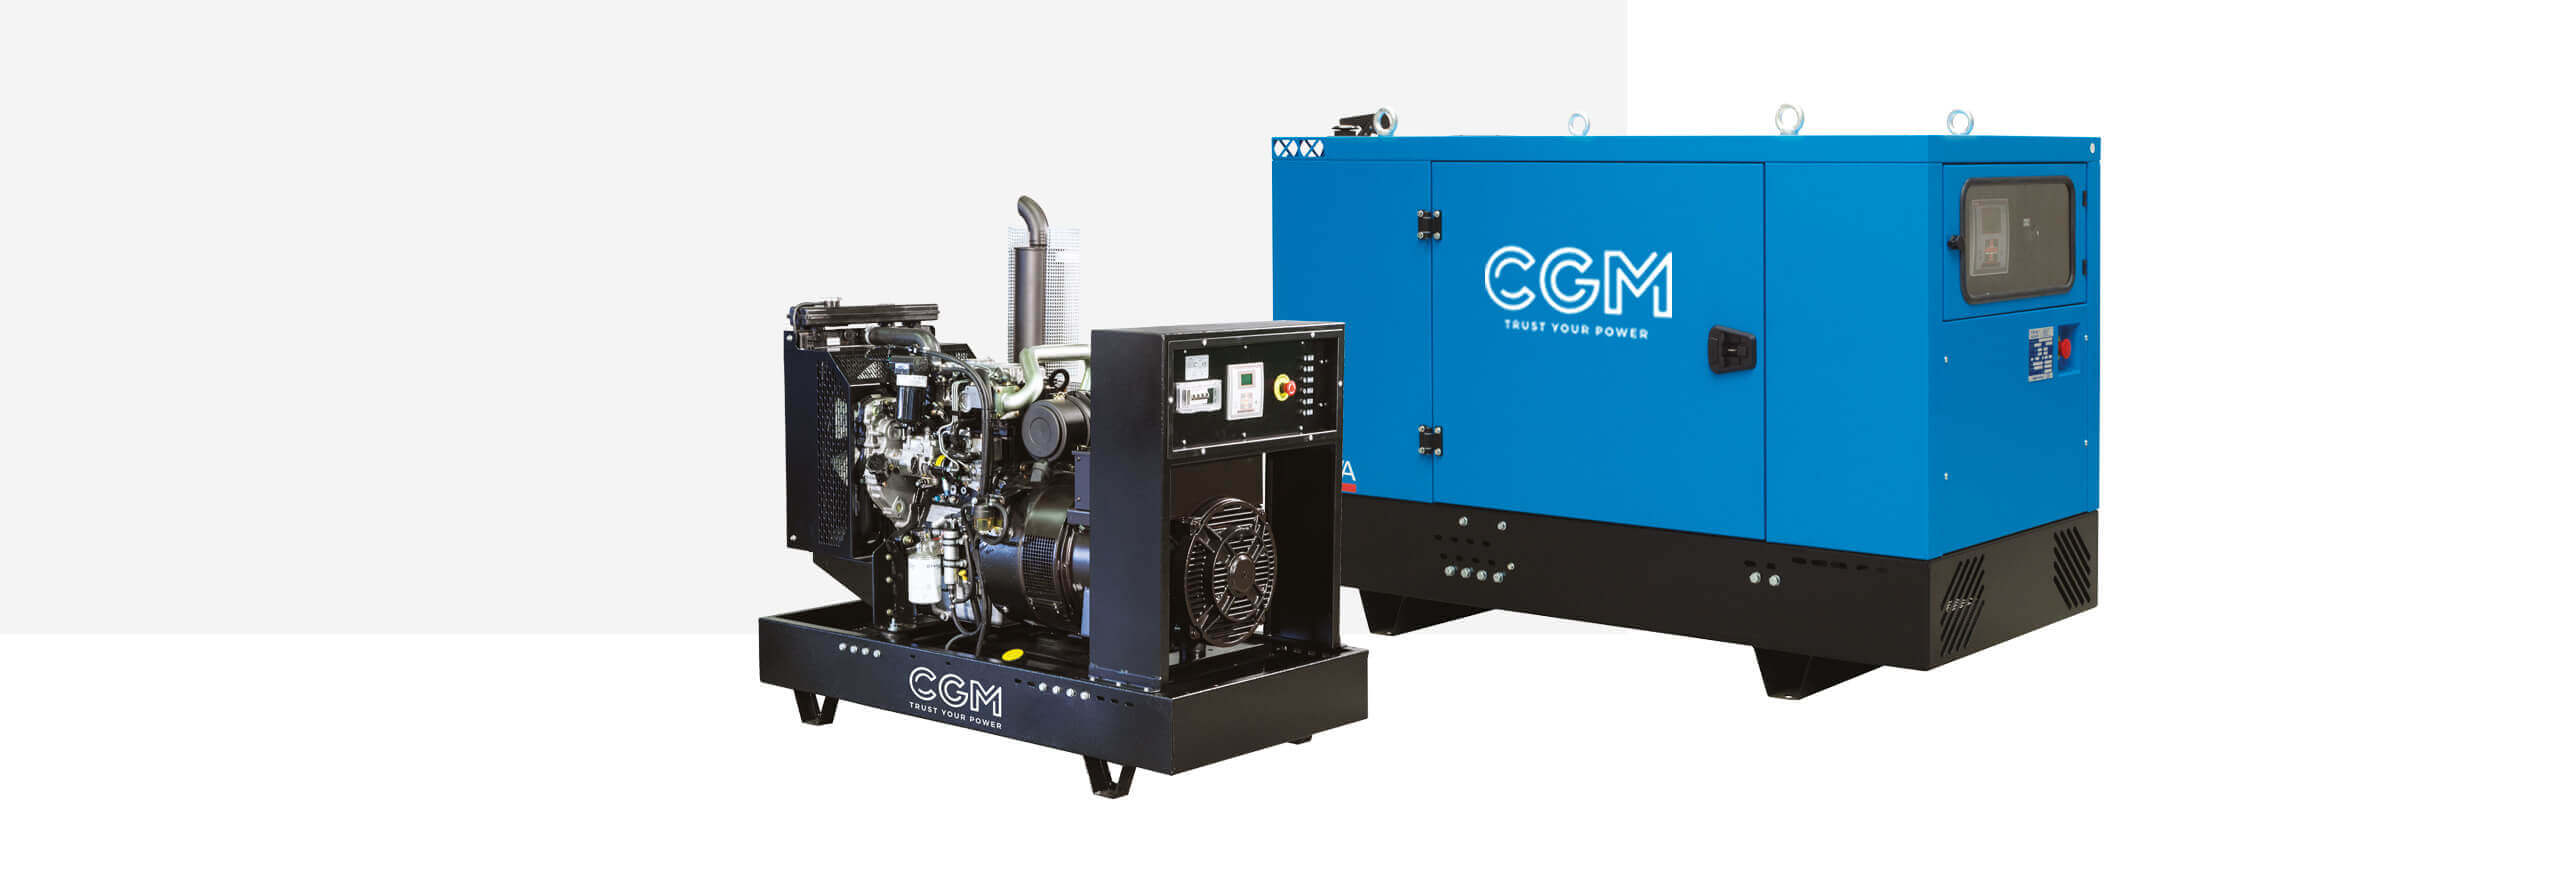 Generatoare industriale producator CGM